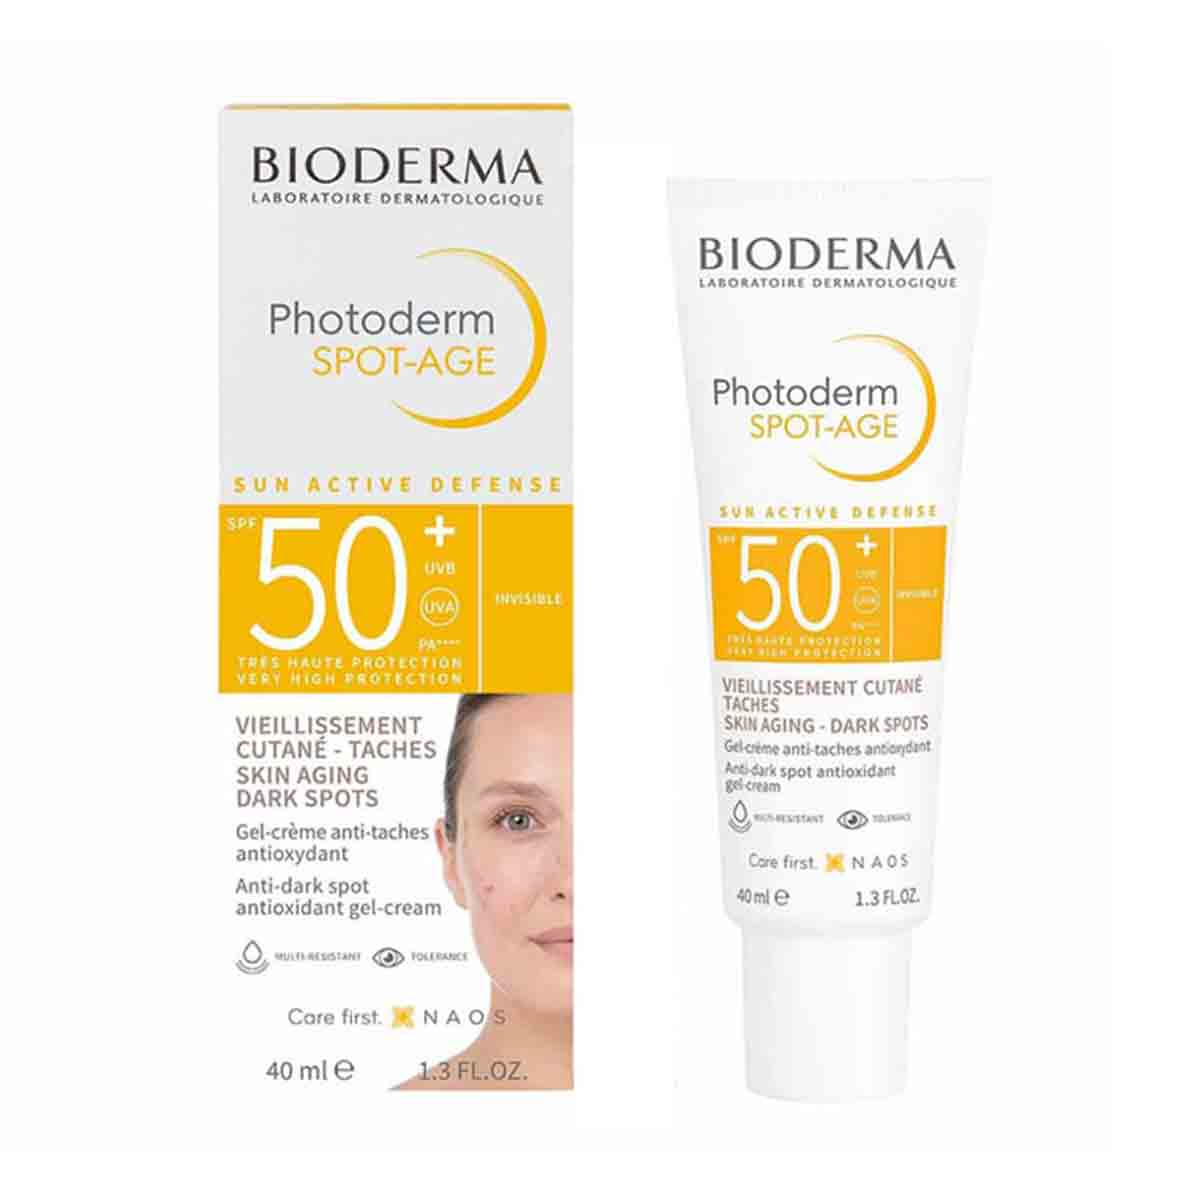 ژل کرم ضد آفتاب ضد لک و ضد پیری بایودرما +BIODERMA SPF 50 مدل Photoderm Spot-Age بی رنگ 40 میل